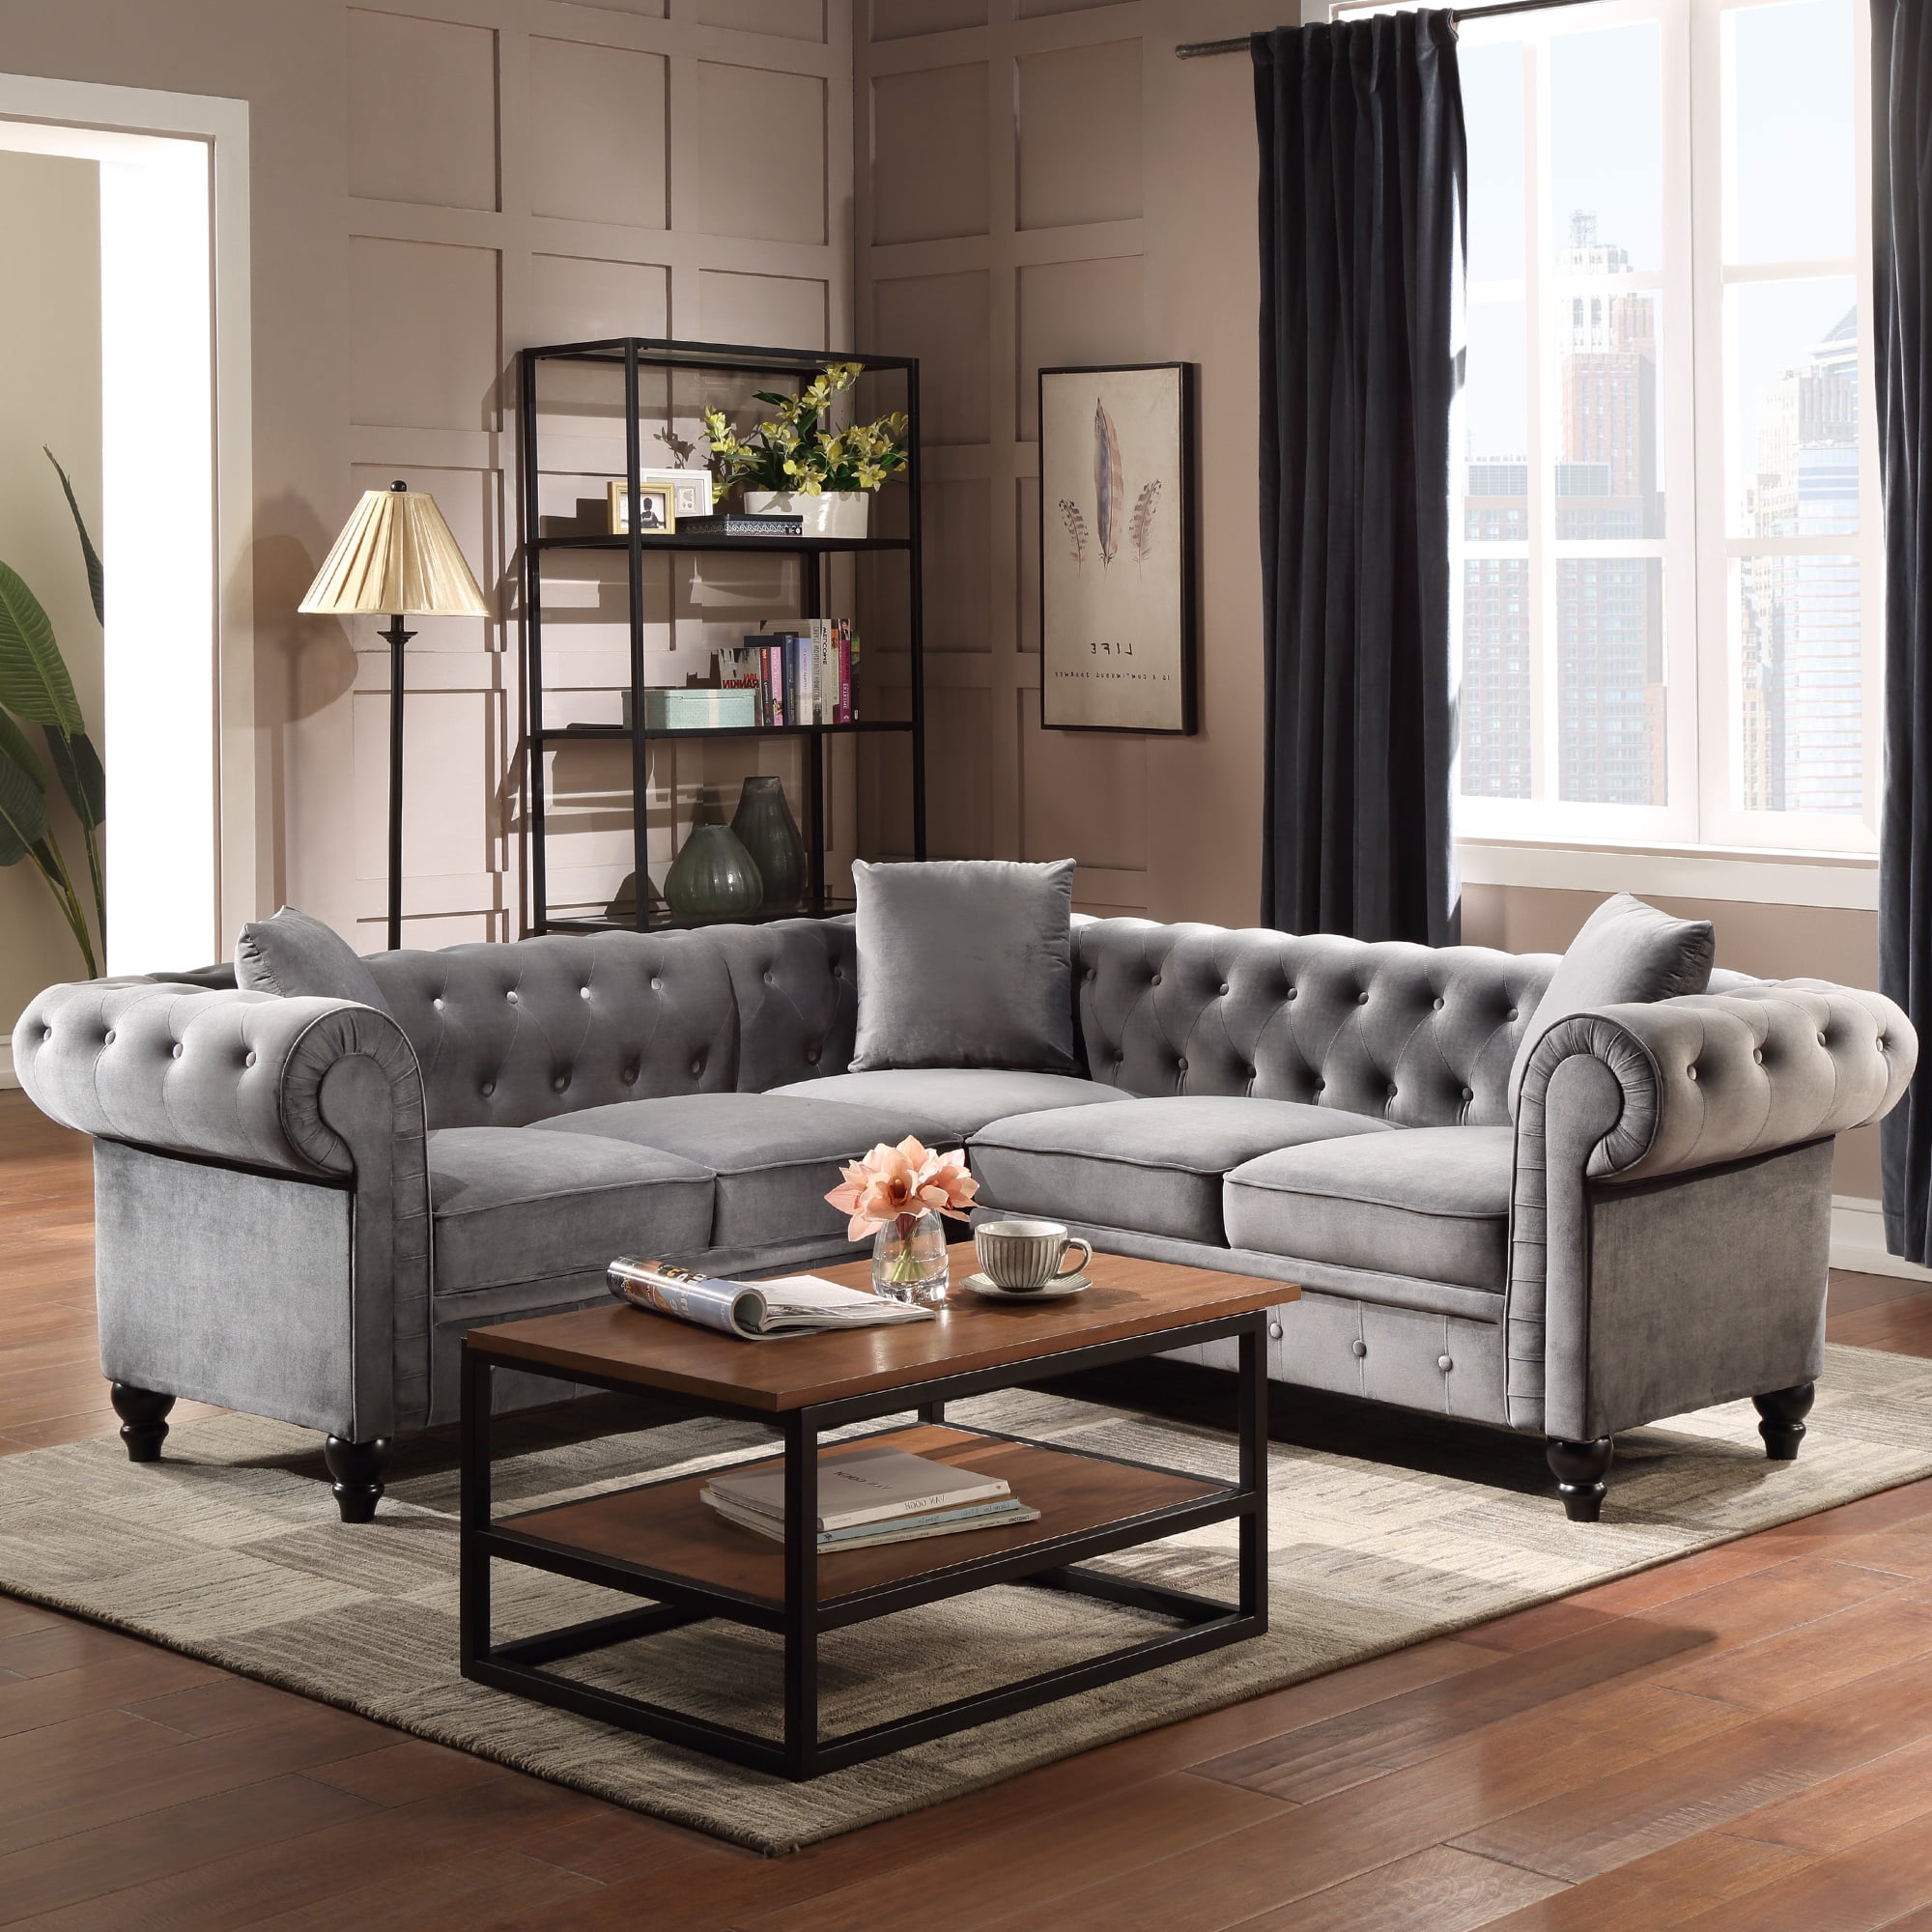 Velvet Tufted Sofa for Living Room, URHOMEPRO Mid Century ...